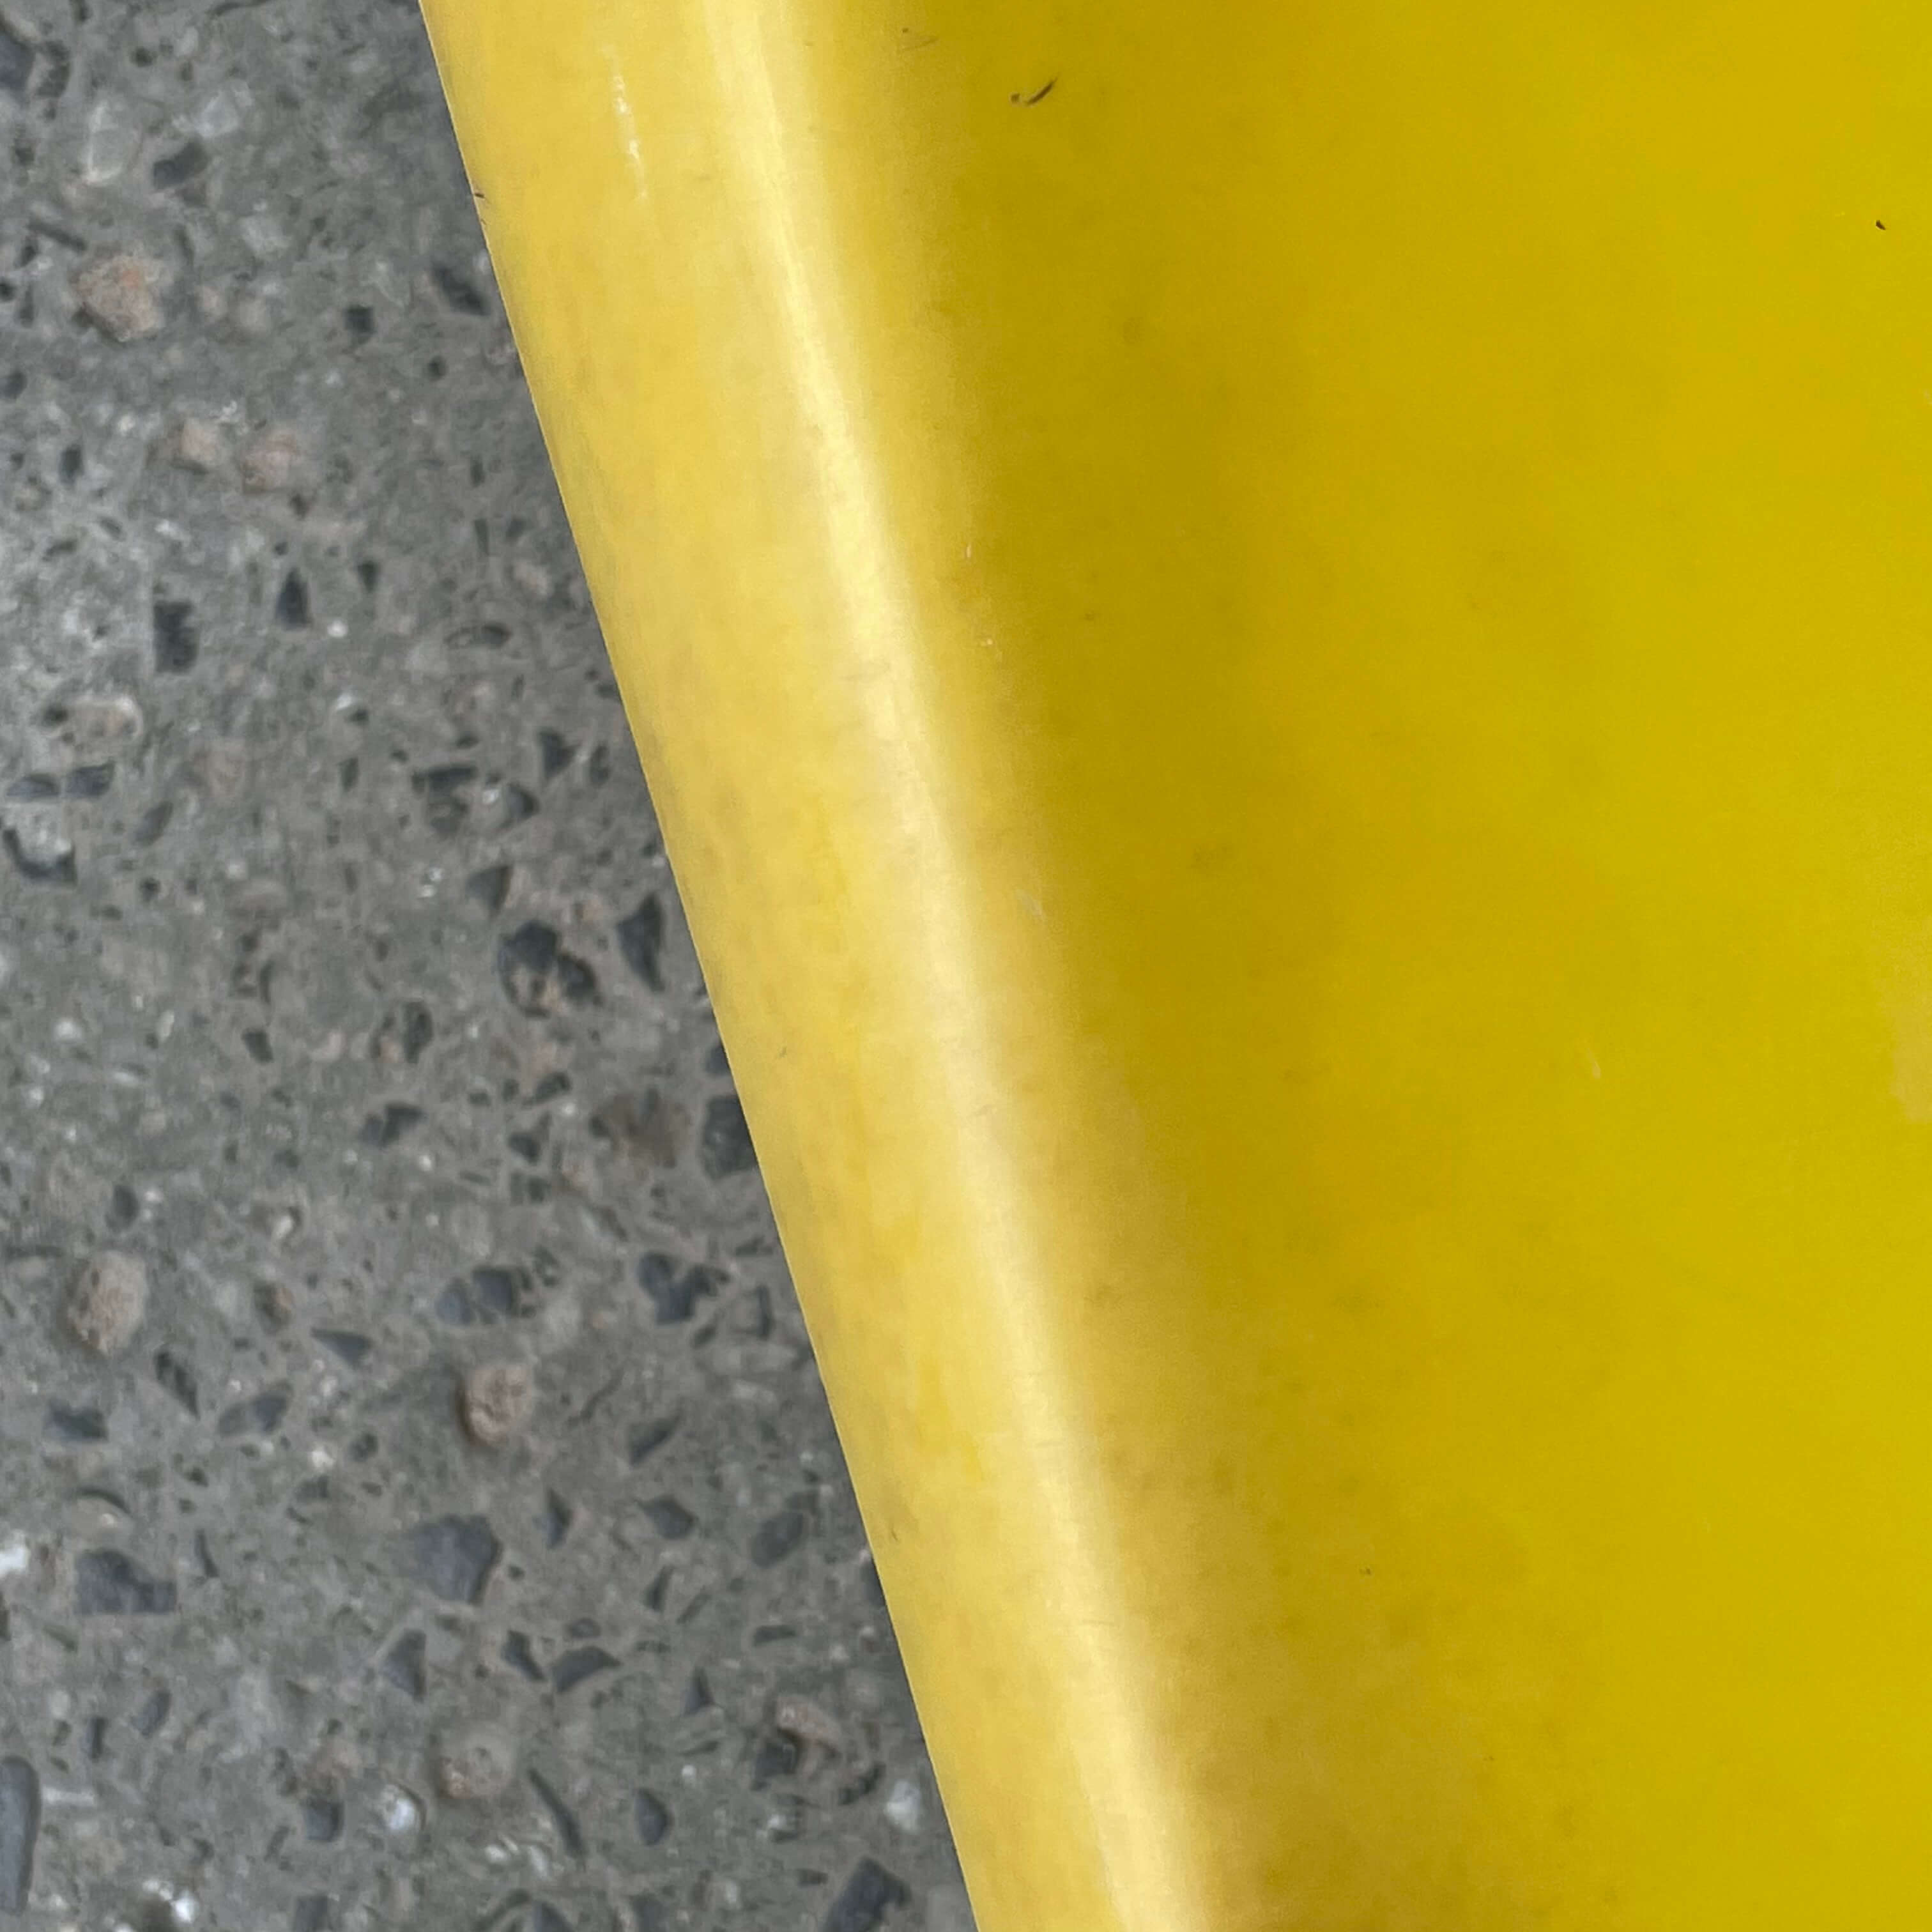 steen ostergaard cado plastic chair closeup